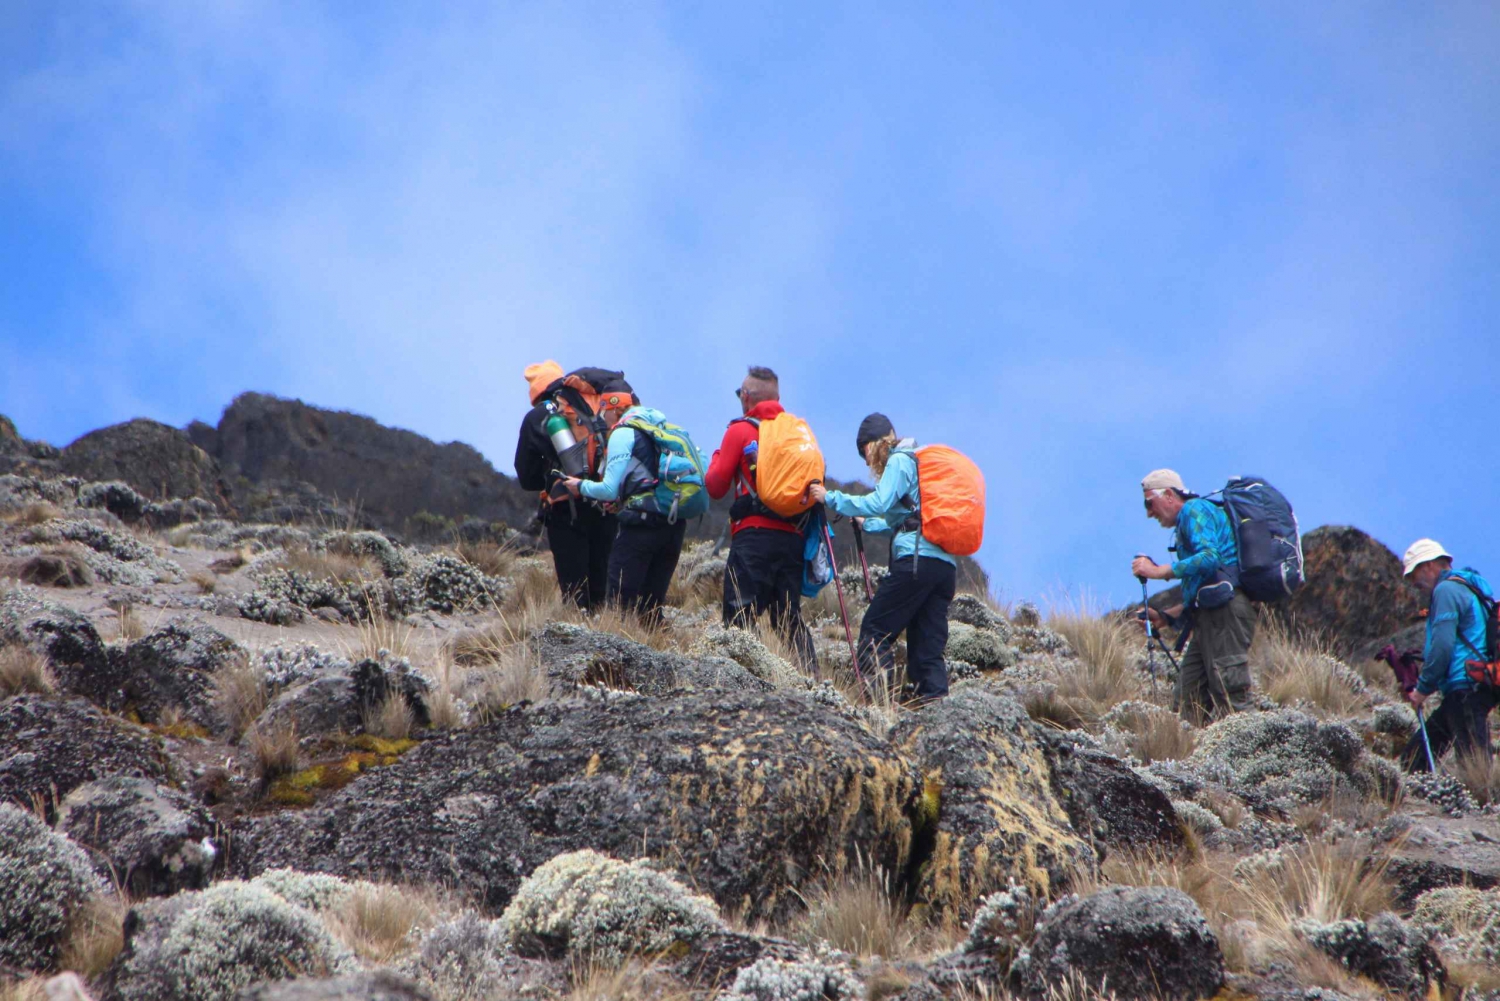 7 dagers gruppebestigning av Kilimanjaro på Machame-ruten